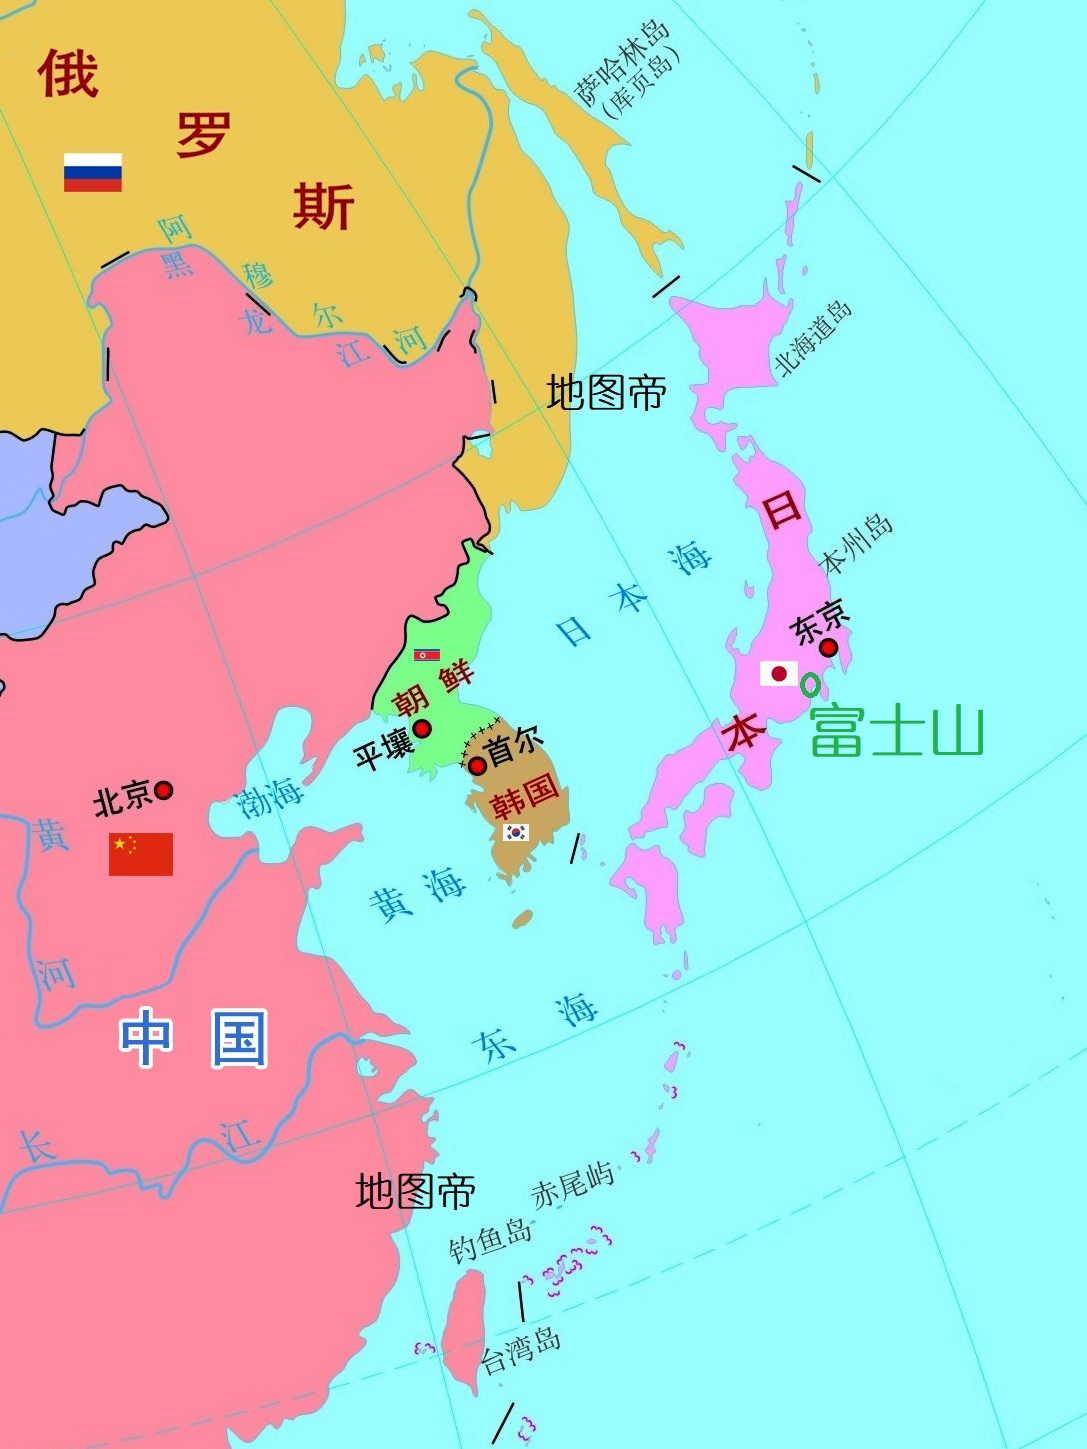 中国长城与日本富士山的最大区别是什么?